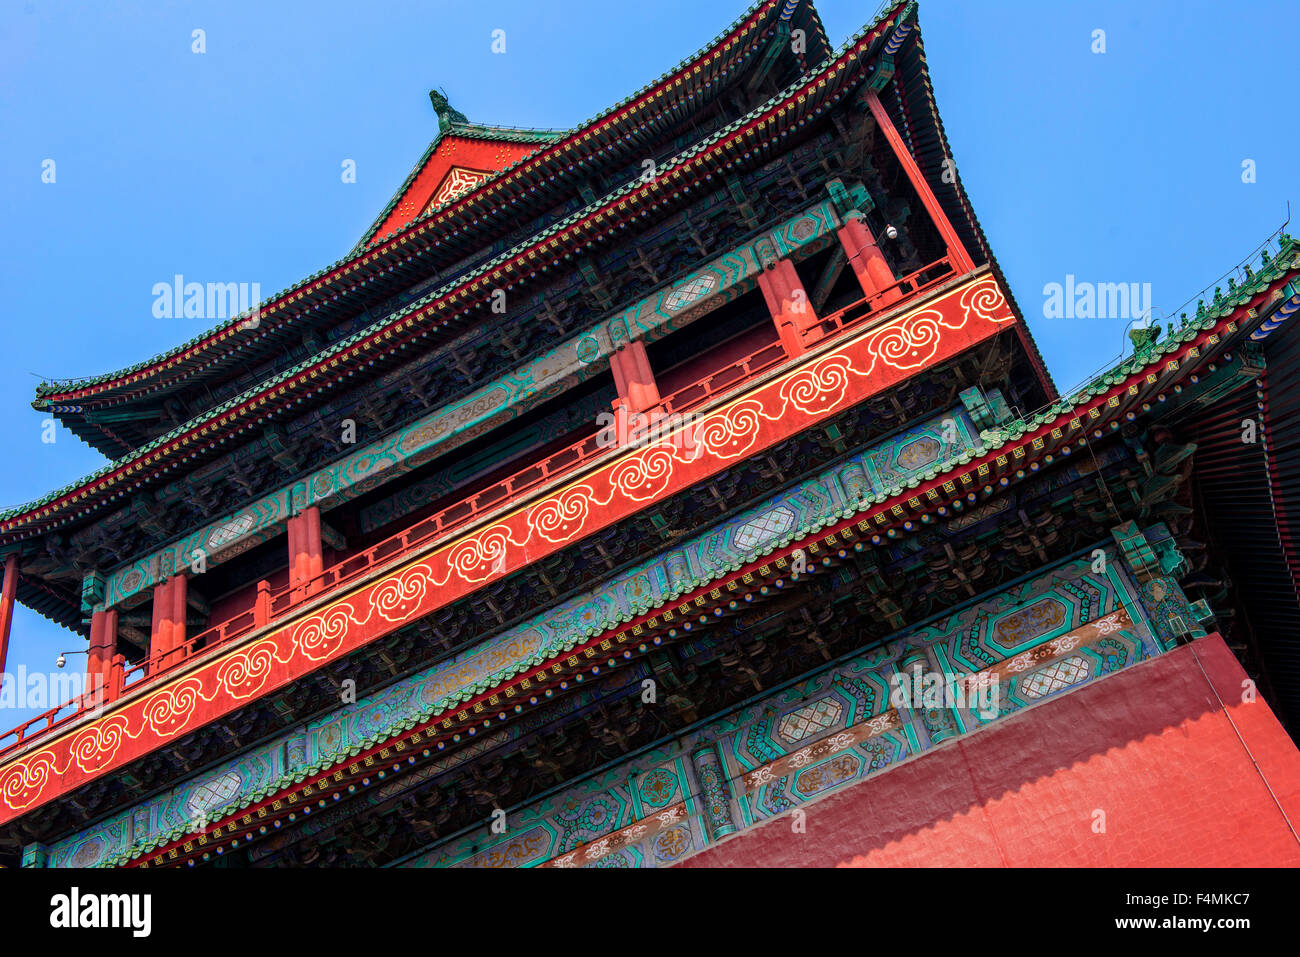 Gulou, Drum Tower, Beijing, China Stock Photo